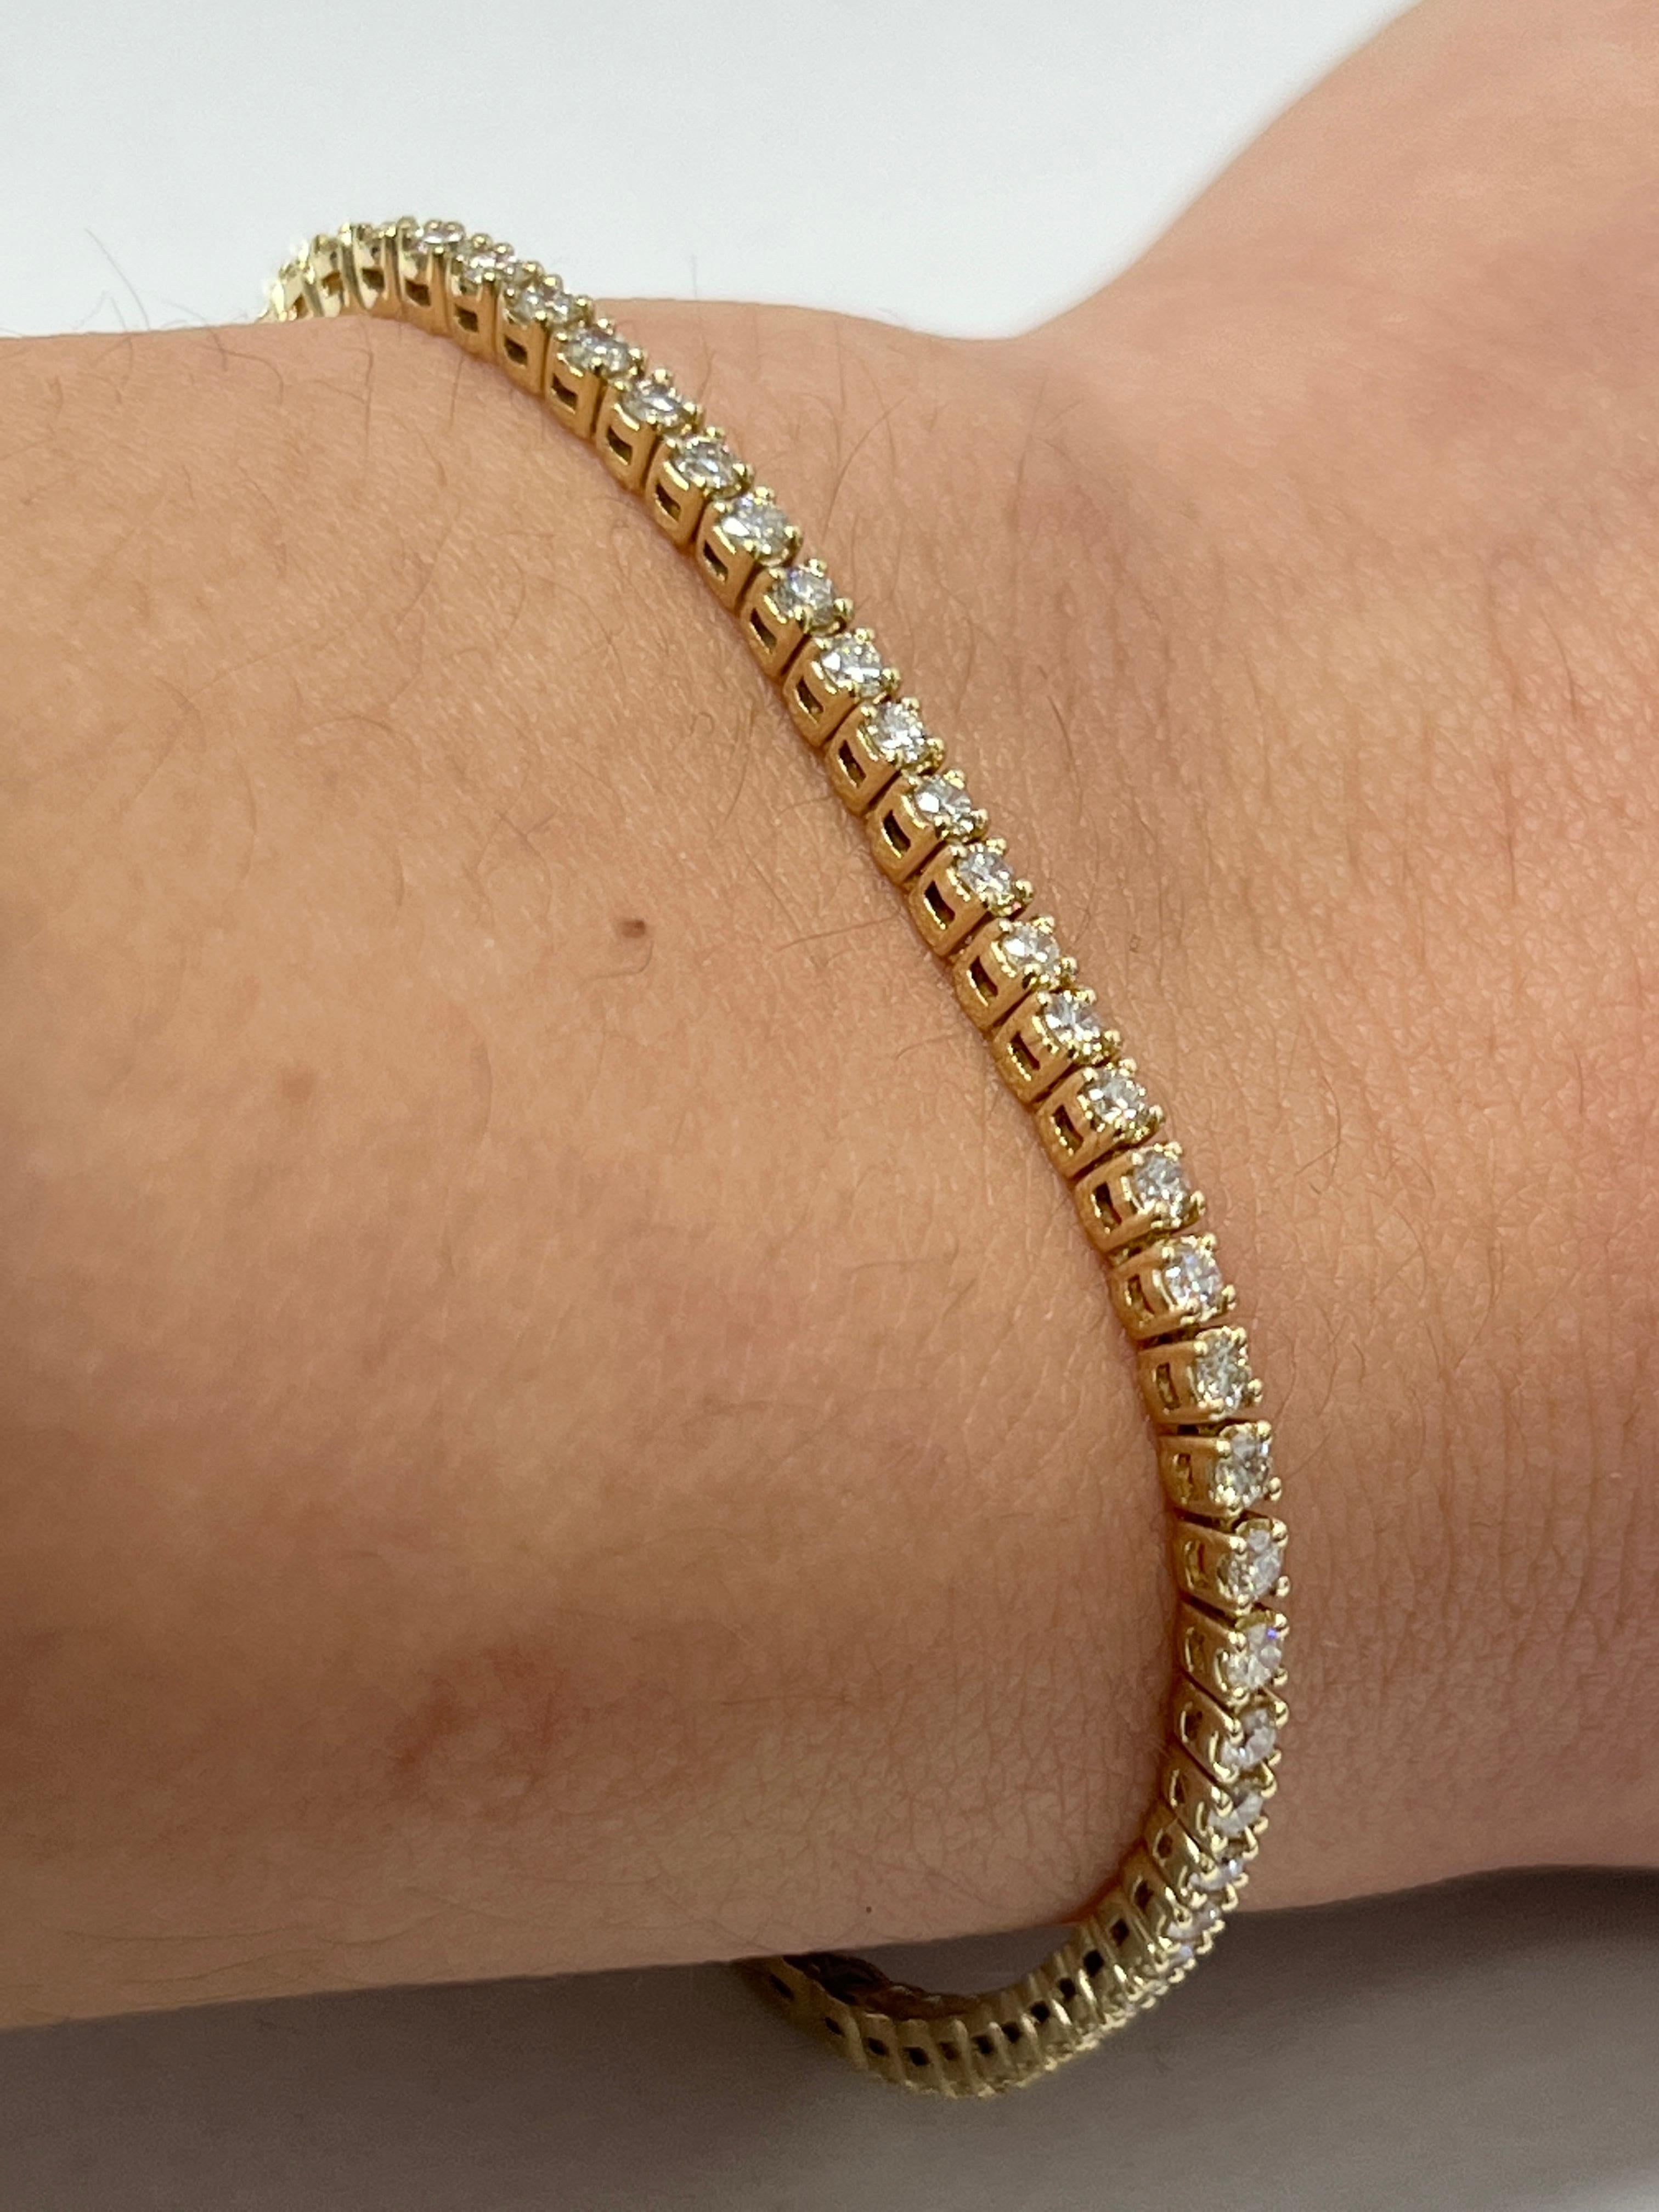 La mode et le glamour sont au premier plan avec cet exquis bracelet en diamants. Ce bracelet en or jaune 14 carats serti de diamants est composé de 8 grammes d'or. Le sommet est orné d'une rangée de diamants de couleur I-J et de pureté VS/SI. Ce